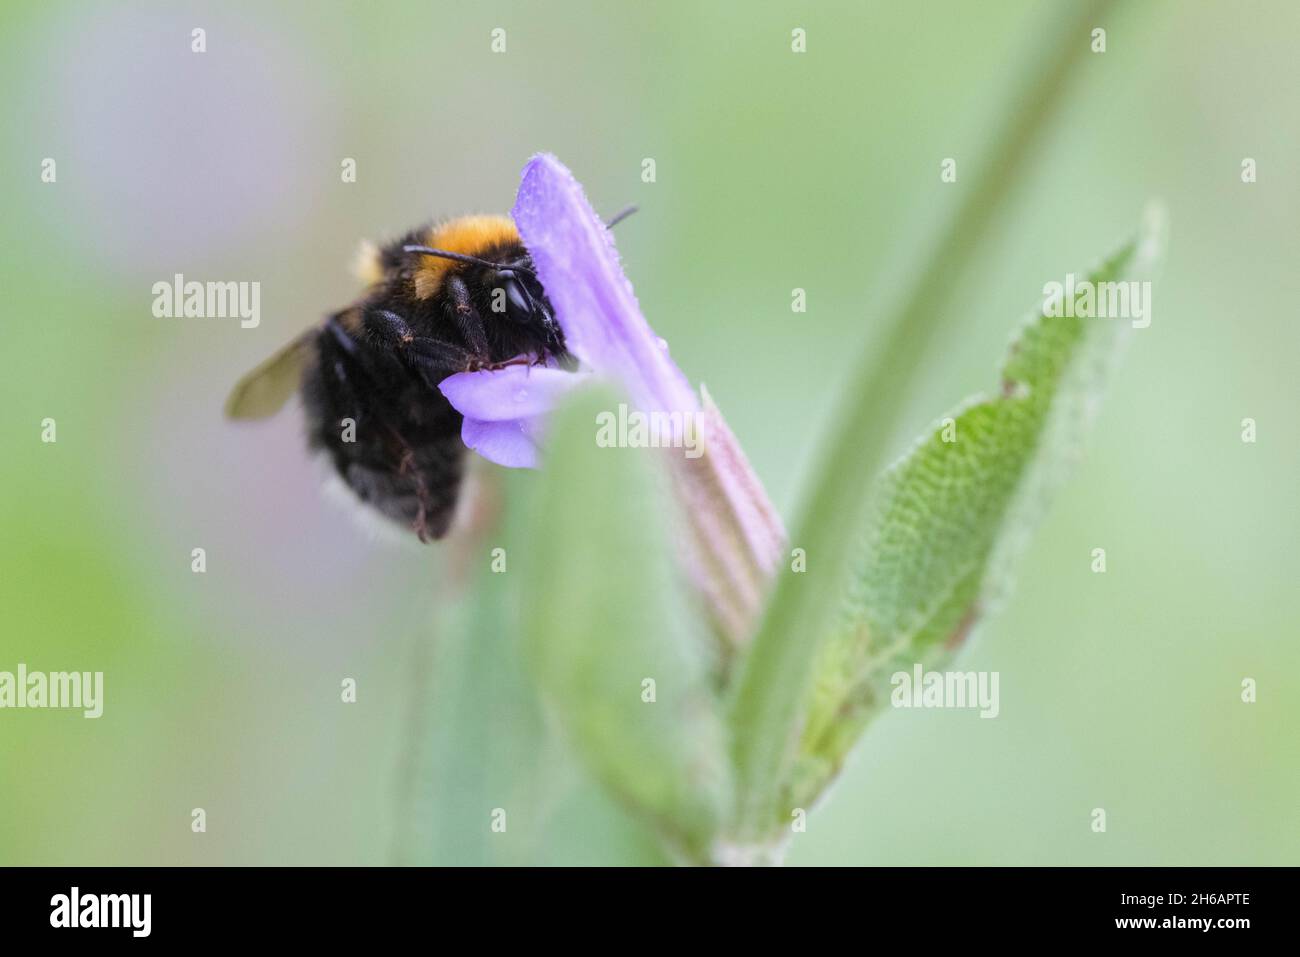 Gartenhummel (Bombus hortorum), garden bumblebee Stock Photo